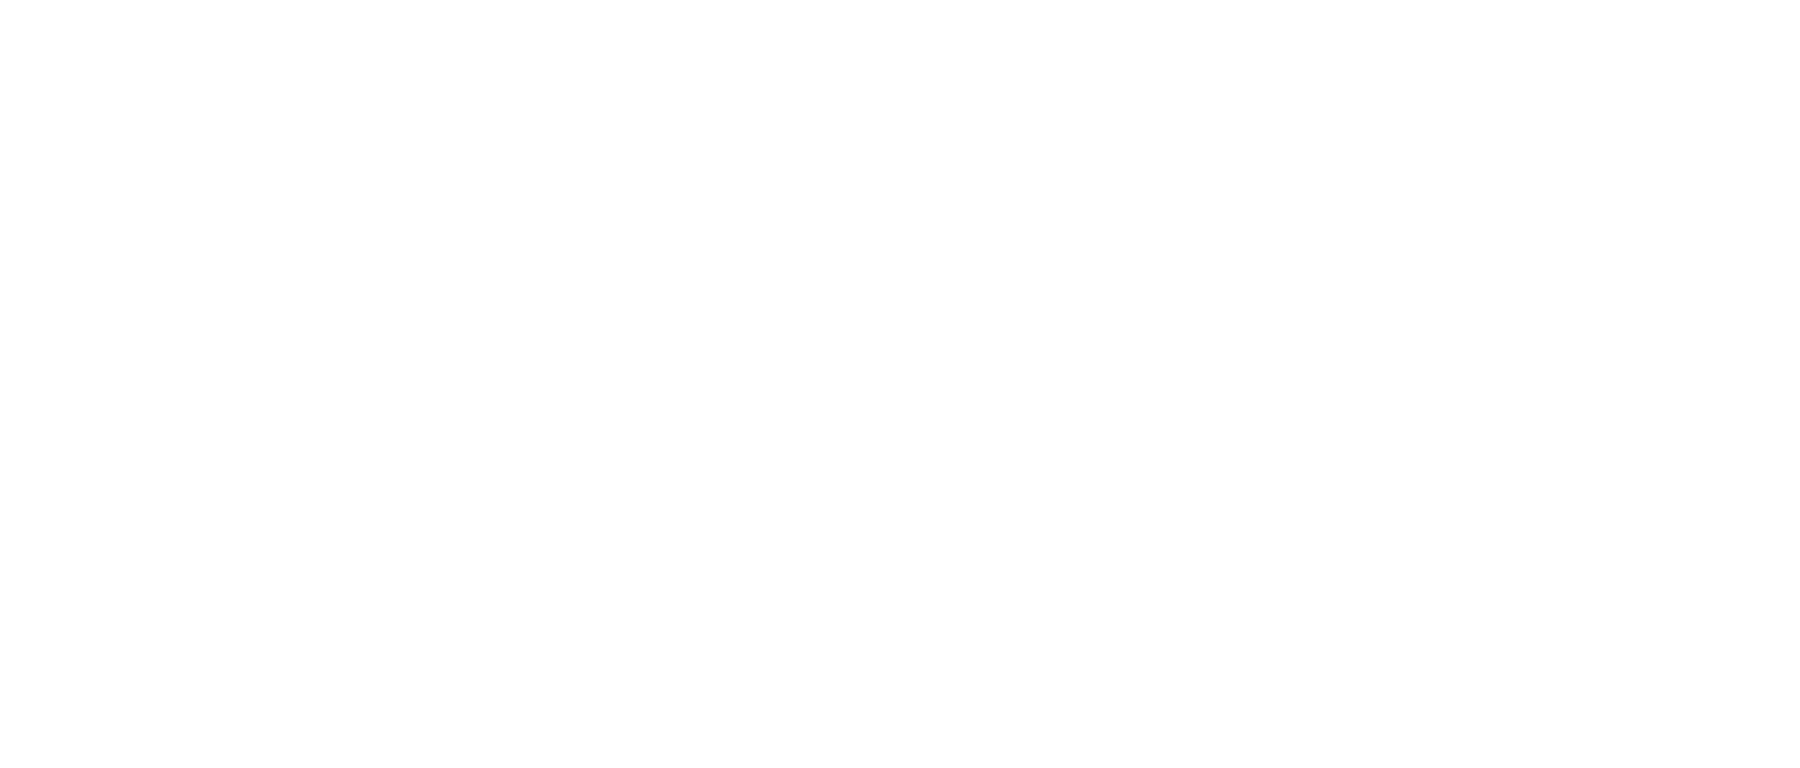 Alta Real Estate Services Header Logo - Select To Go Home